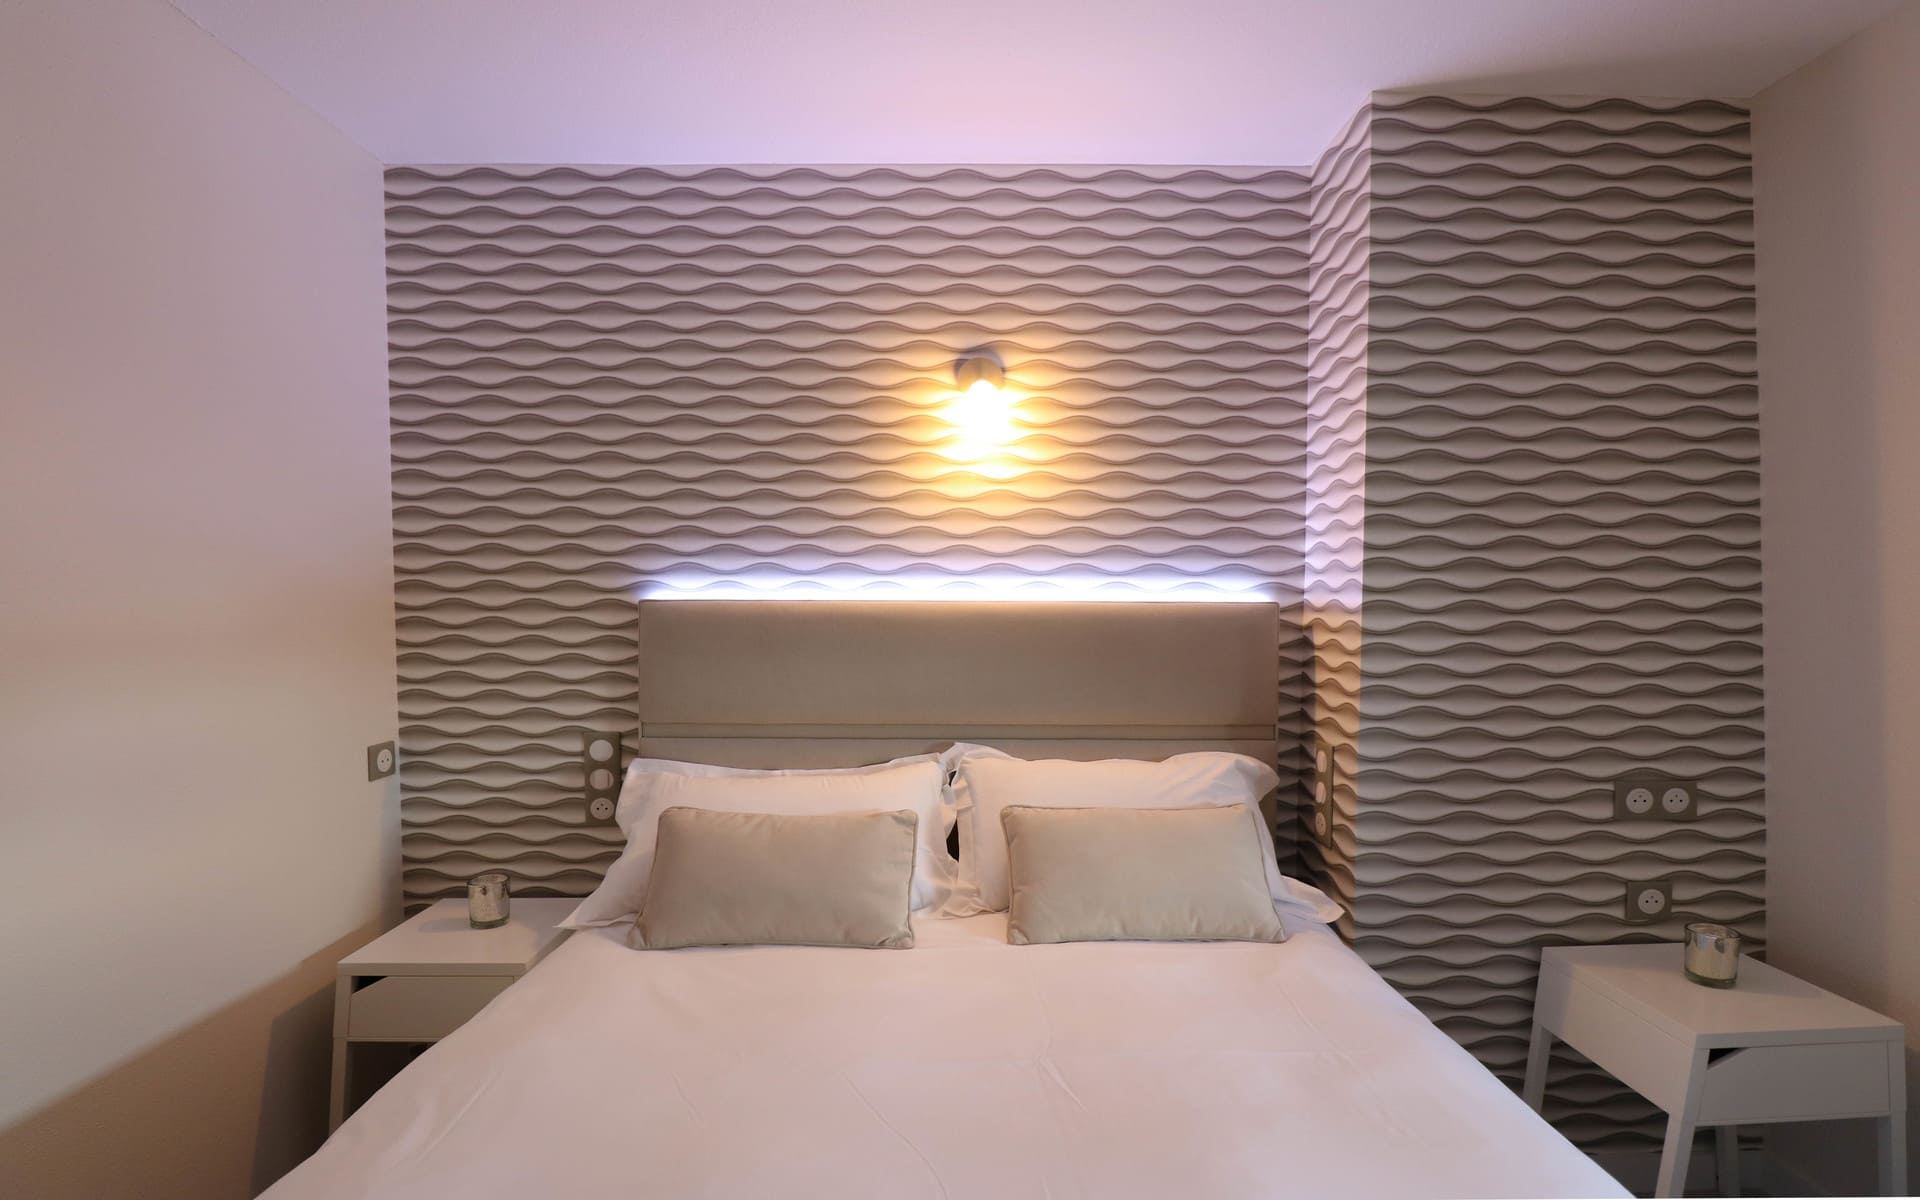 Chambres cosy design - Hôtel 3 étoiles Rennes aéroport